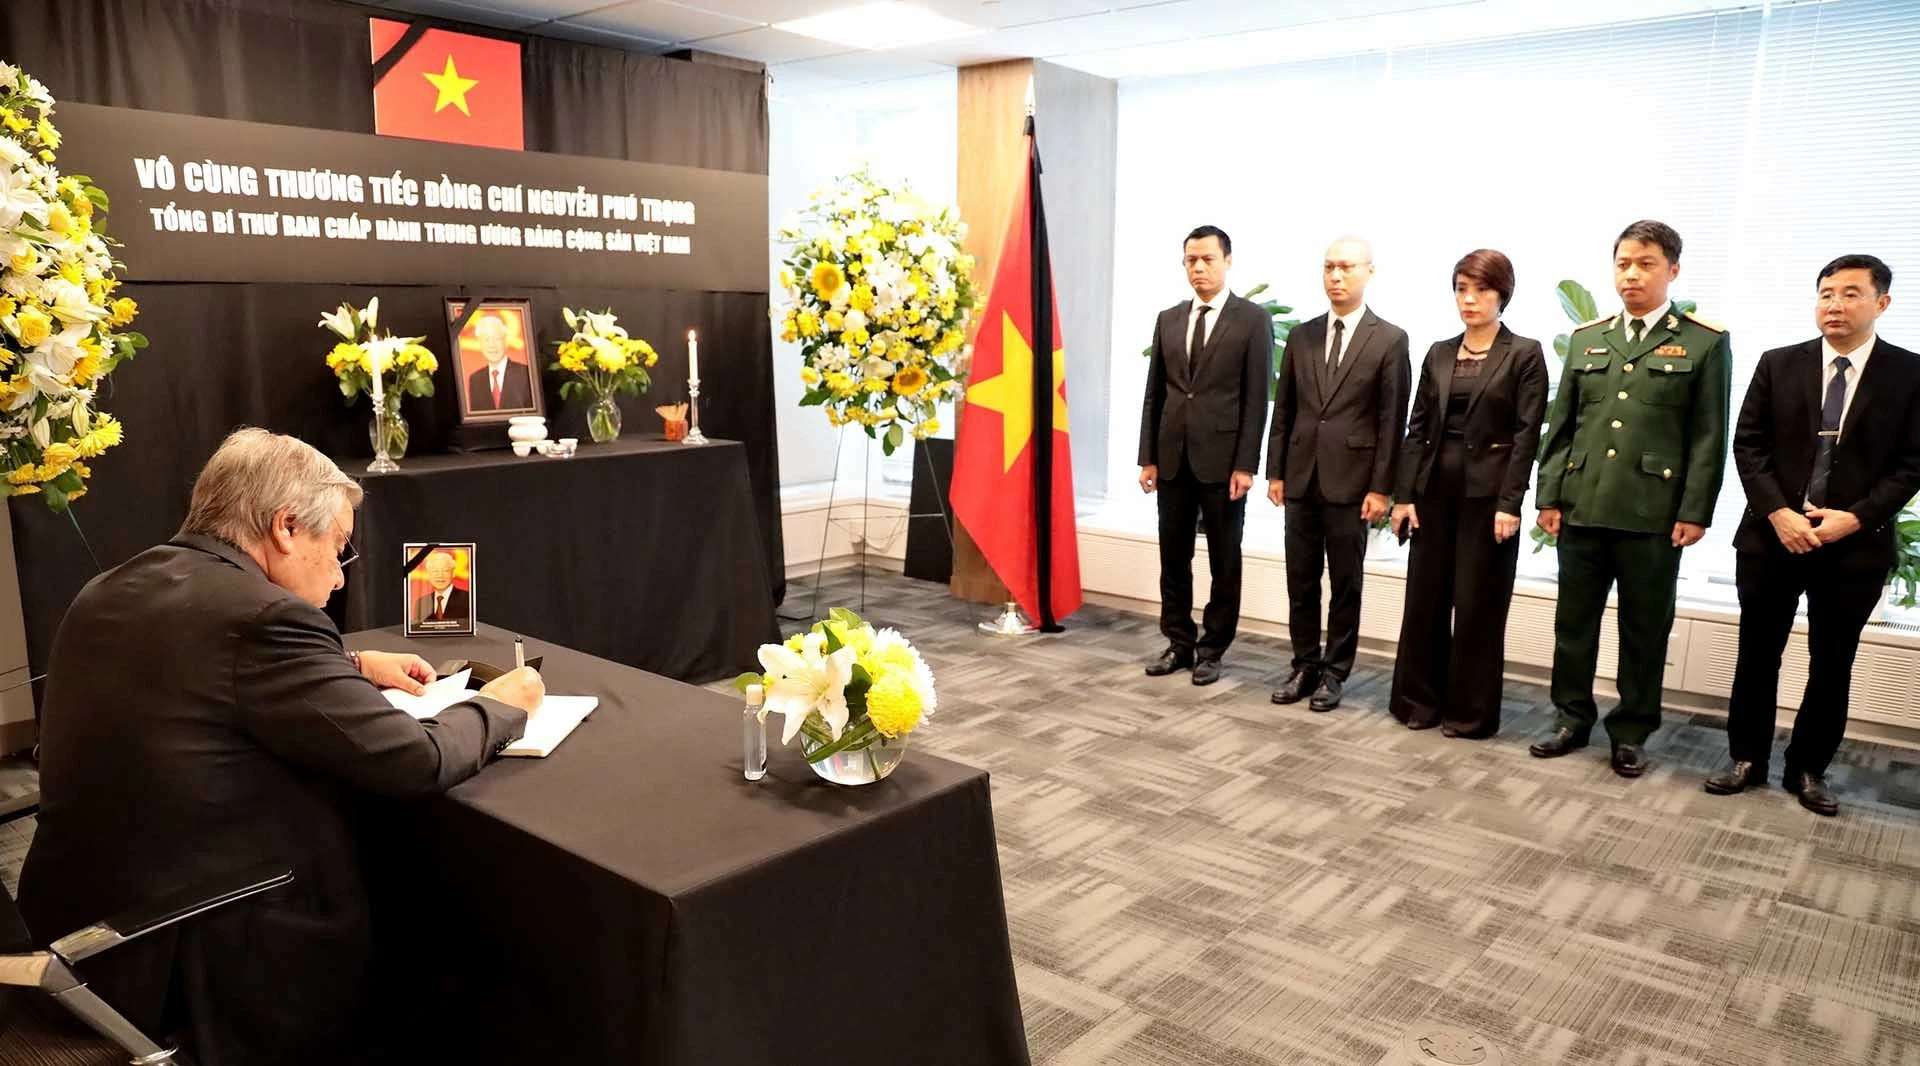 Tổng Bí thư Nguyễn Phú Trọng với ngoại giao và ngoại giao, đối ngoại với Tổng Bí thư